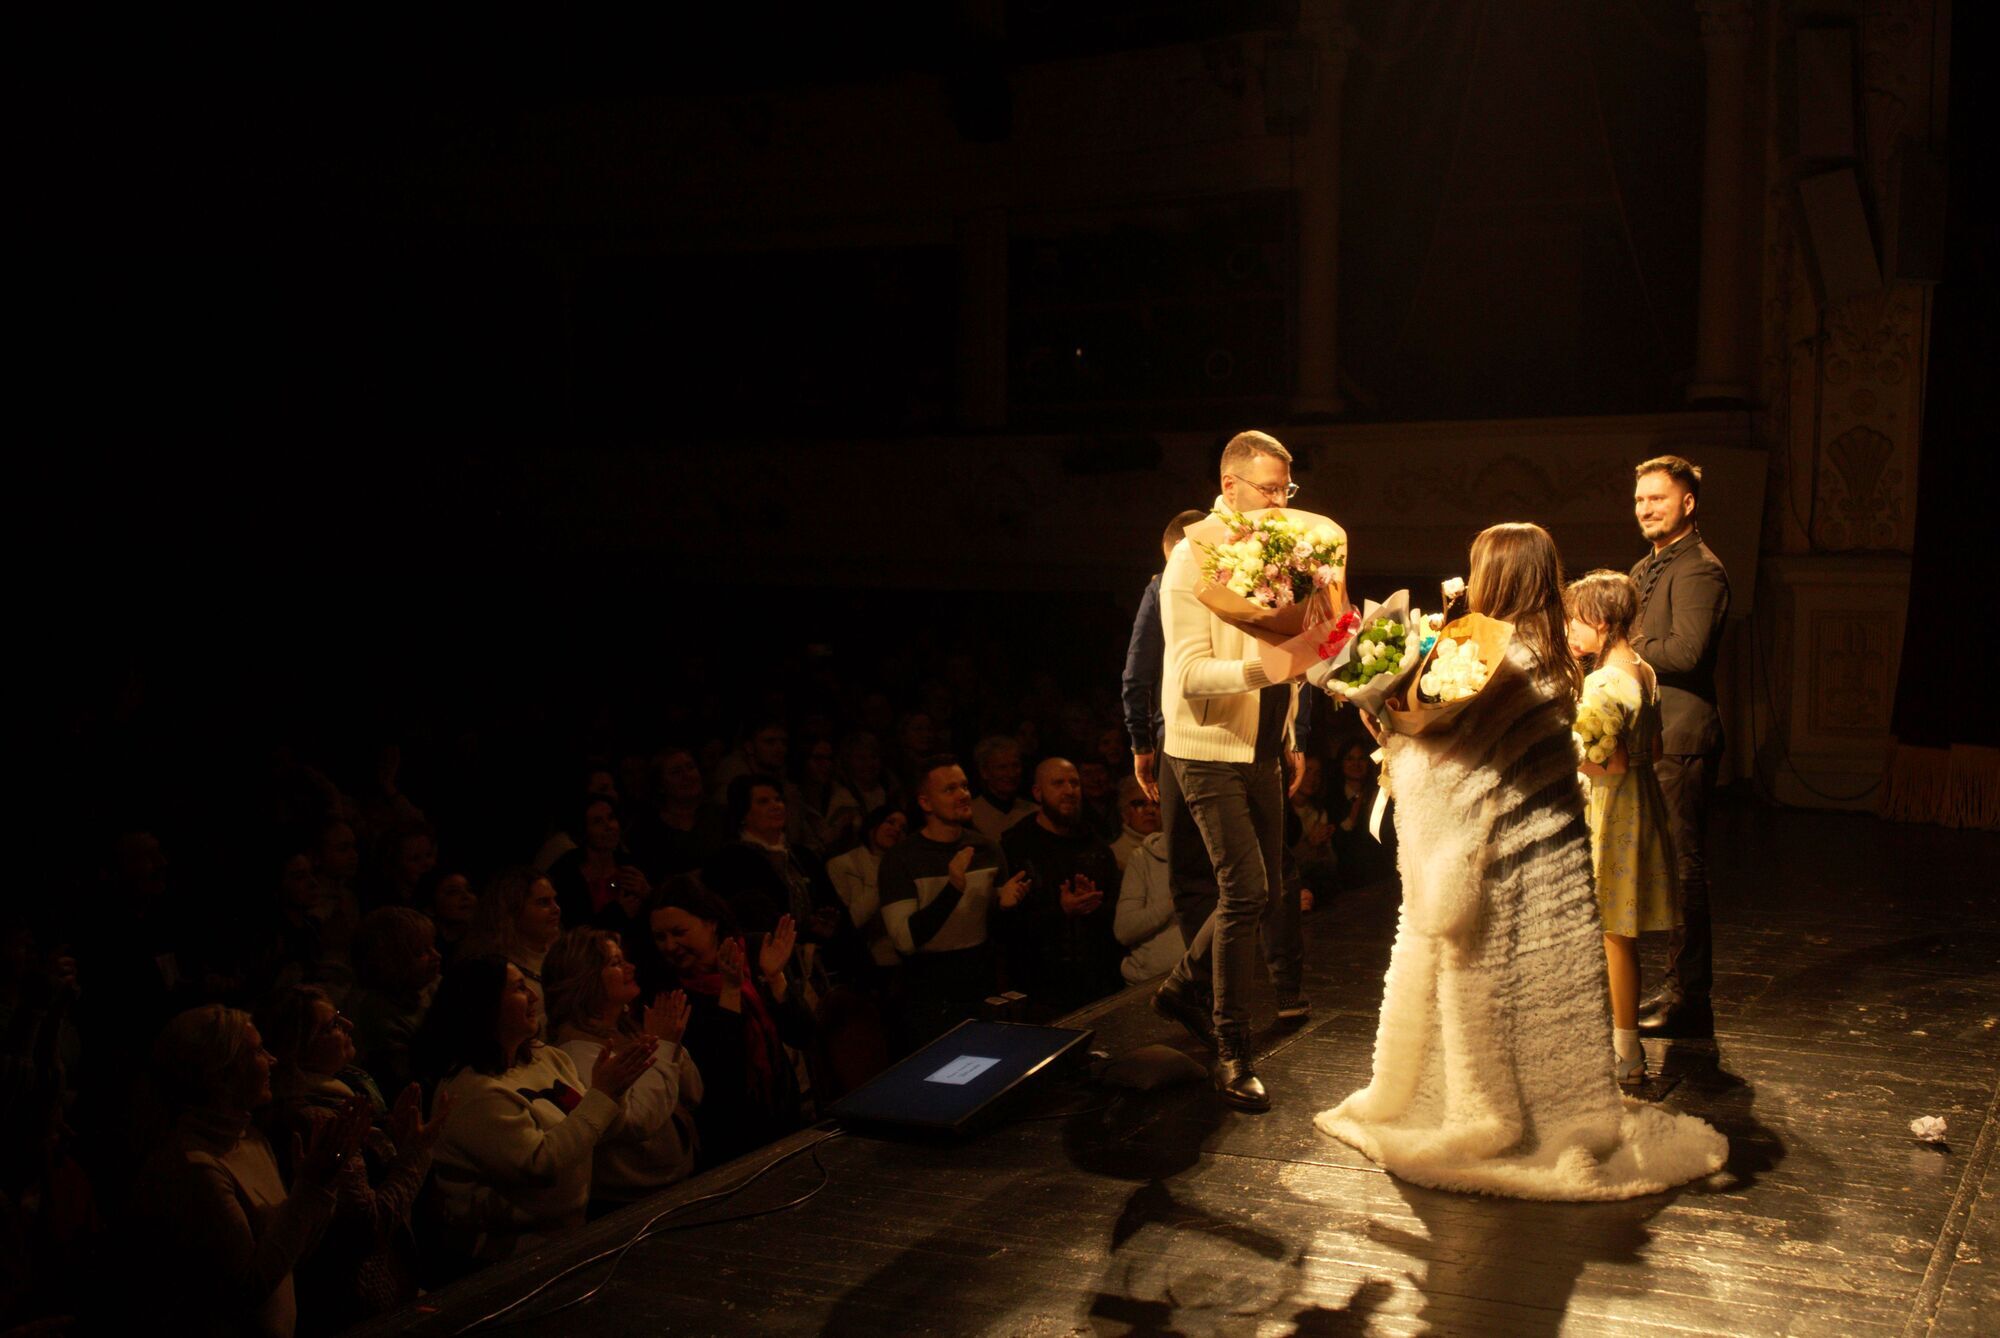  Могилевська представила прем‘єру вистави "Доньки", присвячену матерям, які моляться за своїх синів і дочок на фронті